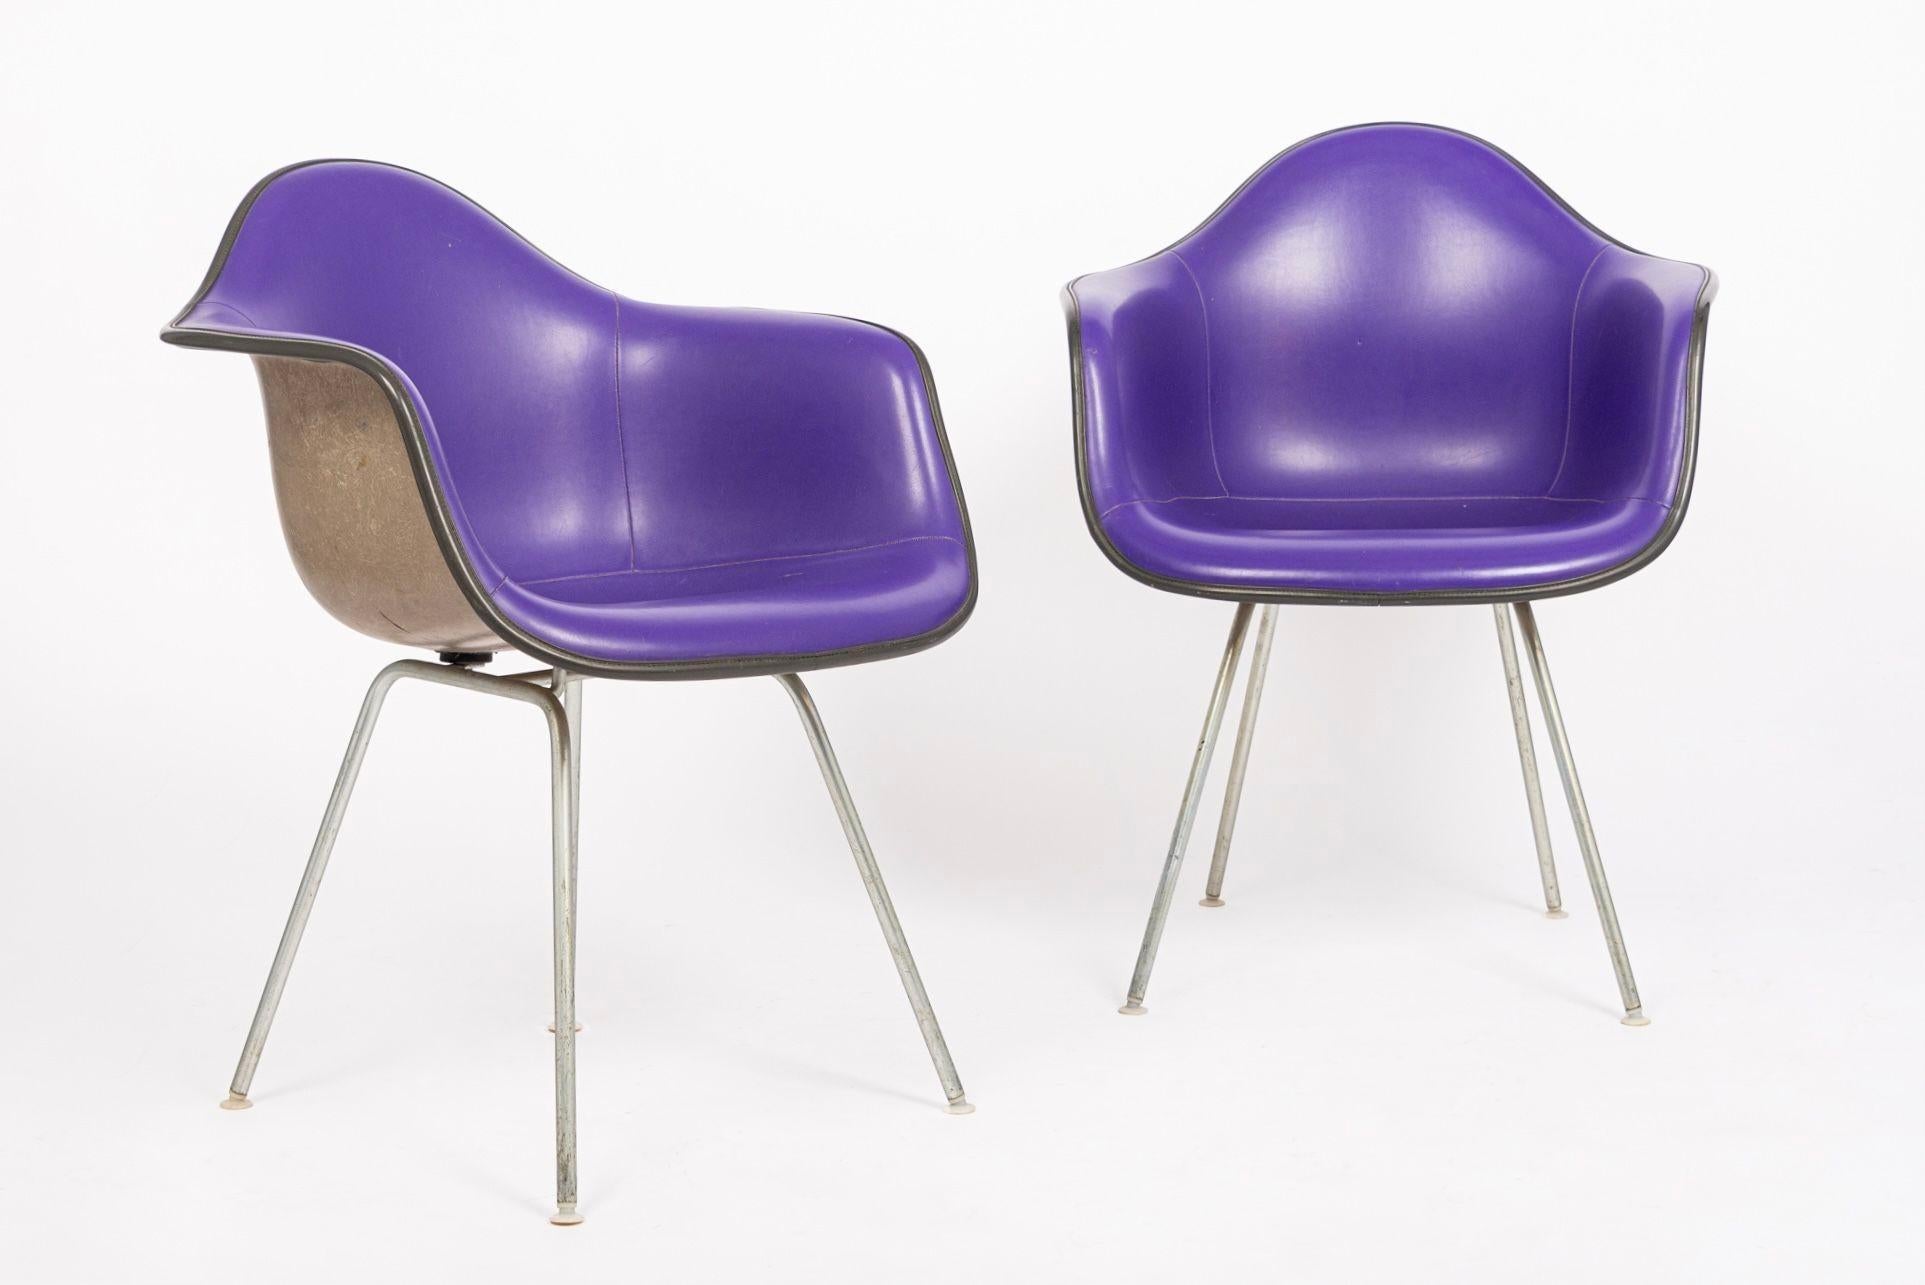 Diese lilafarbenen Lounge-Sessel aus der Mitte des Jahrhunderts wurden von Charles und Ray Eames für Herman Miller entworfen. Der ikonische DAX-Stuhl - Dining (D) Arm Chair (A) auf X Base (X) - wurde von den Eameses in den 1950er Jahren für Herman